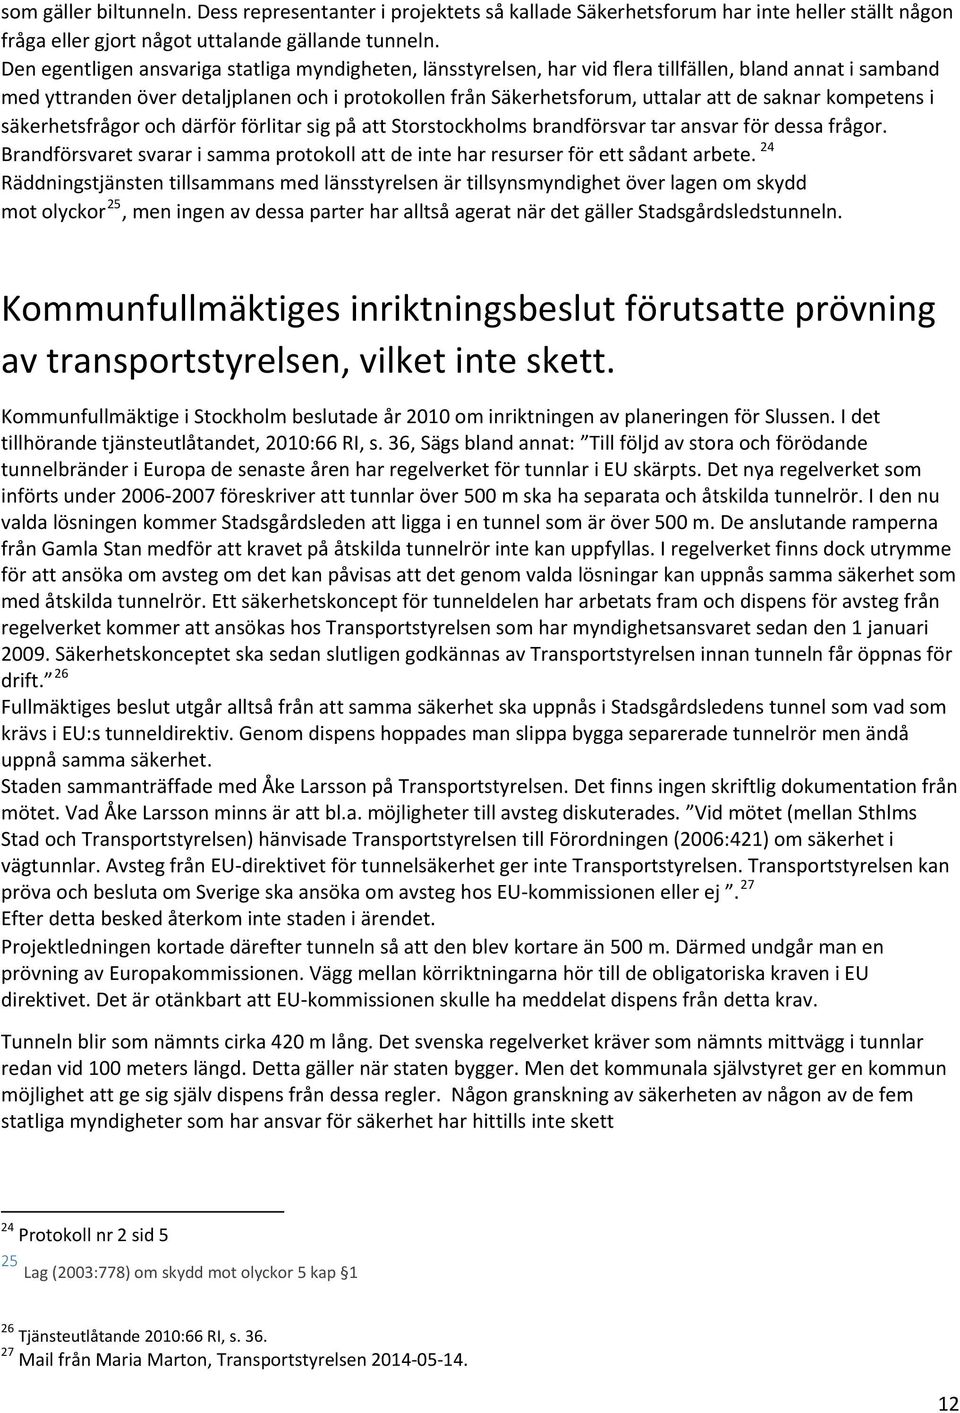 saknar kompetens i säkerhetsfrågor och därför förlitar sig på att Storstockholms brandförsvar tar ansvar för dessa frågor.